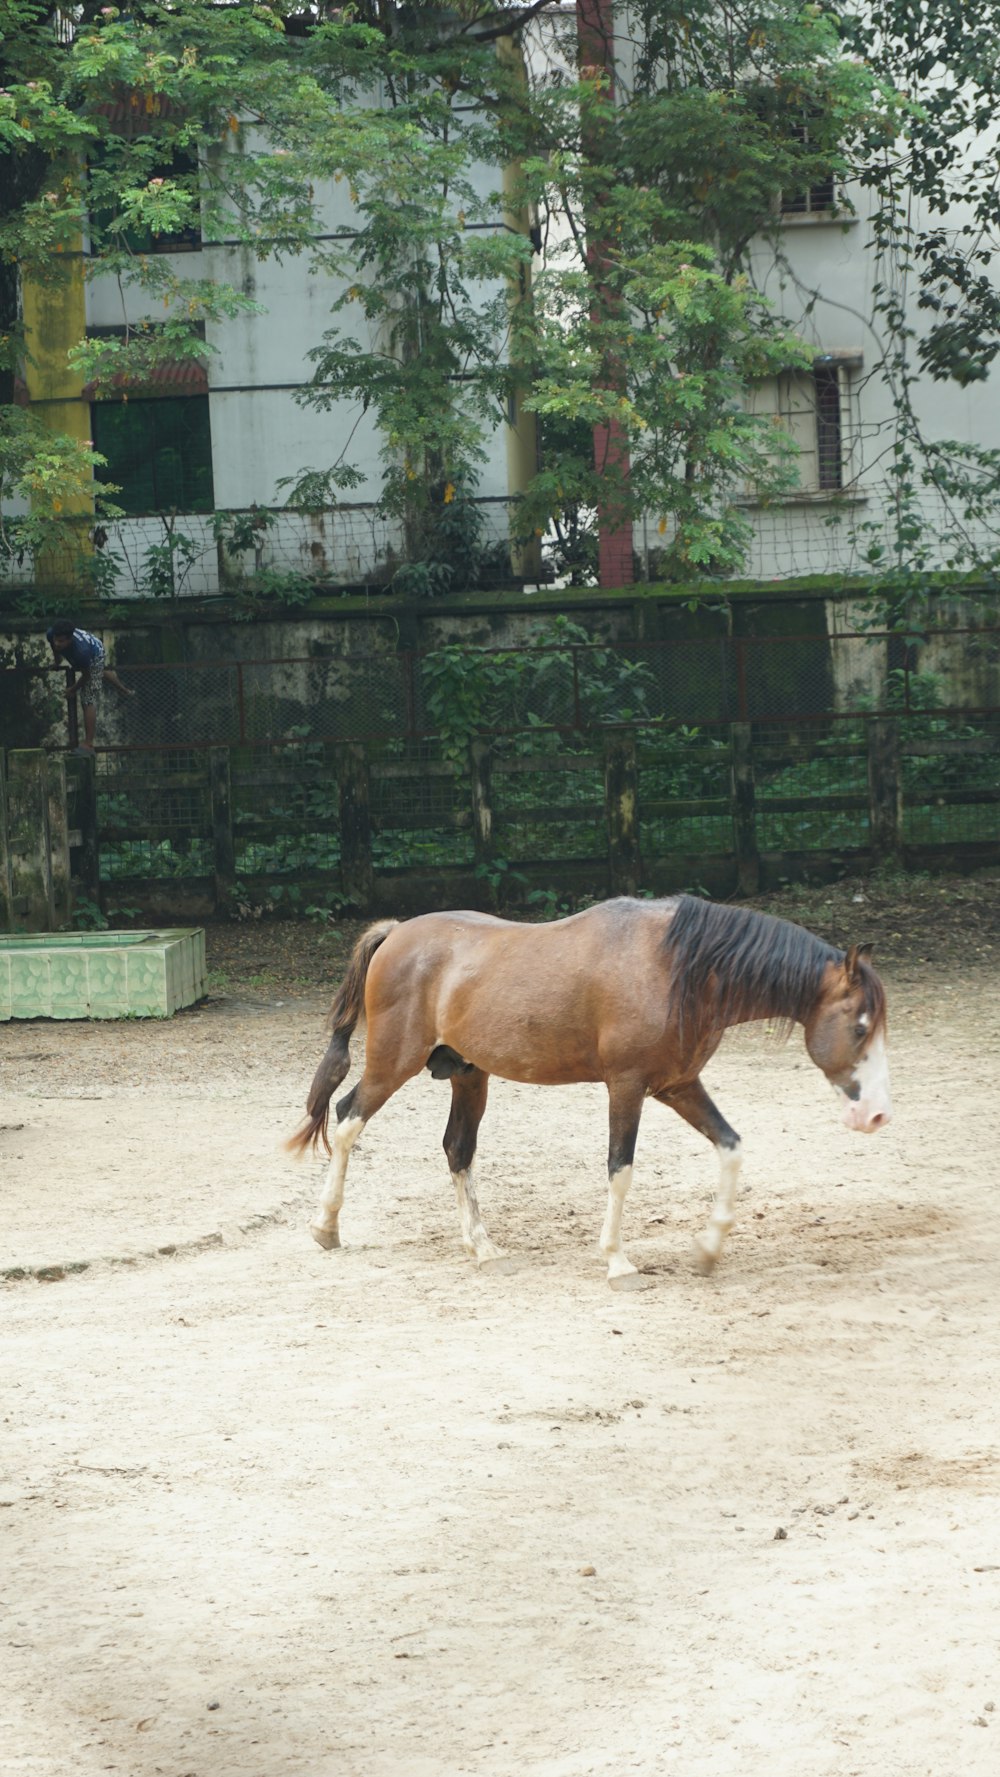 a brown horse walking across a dirt field